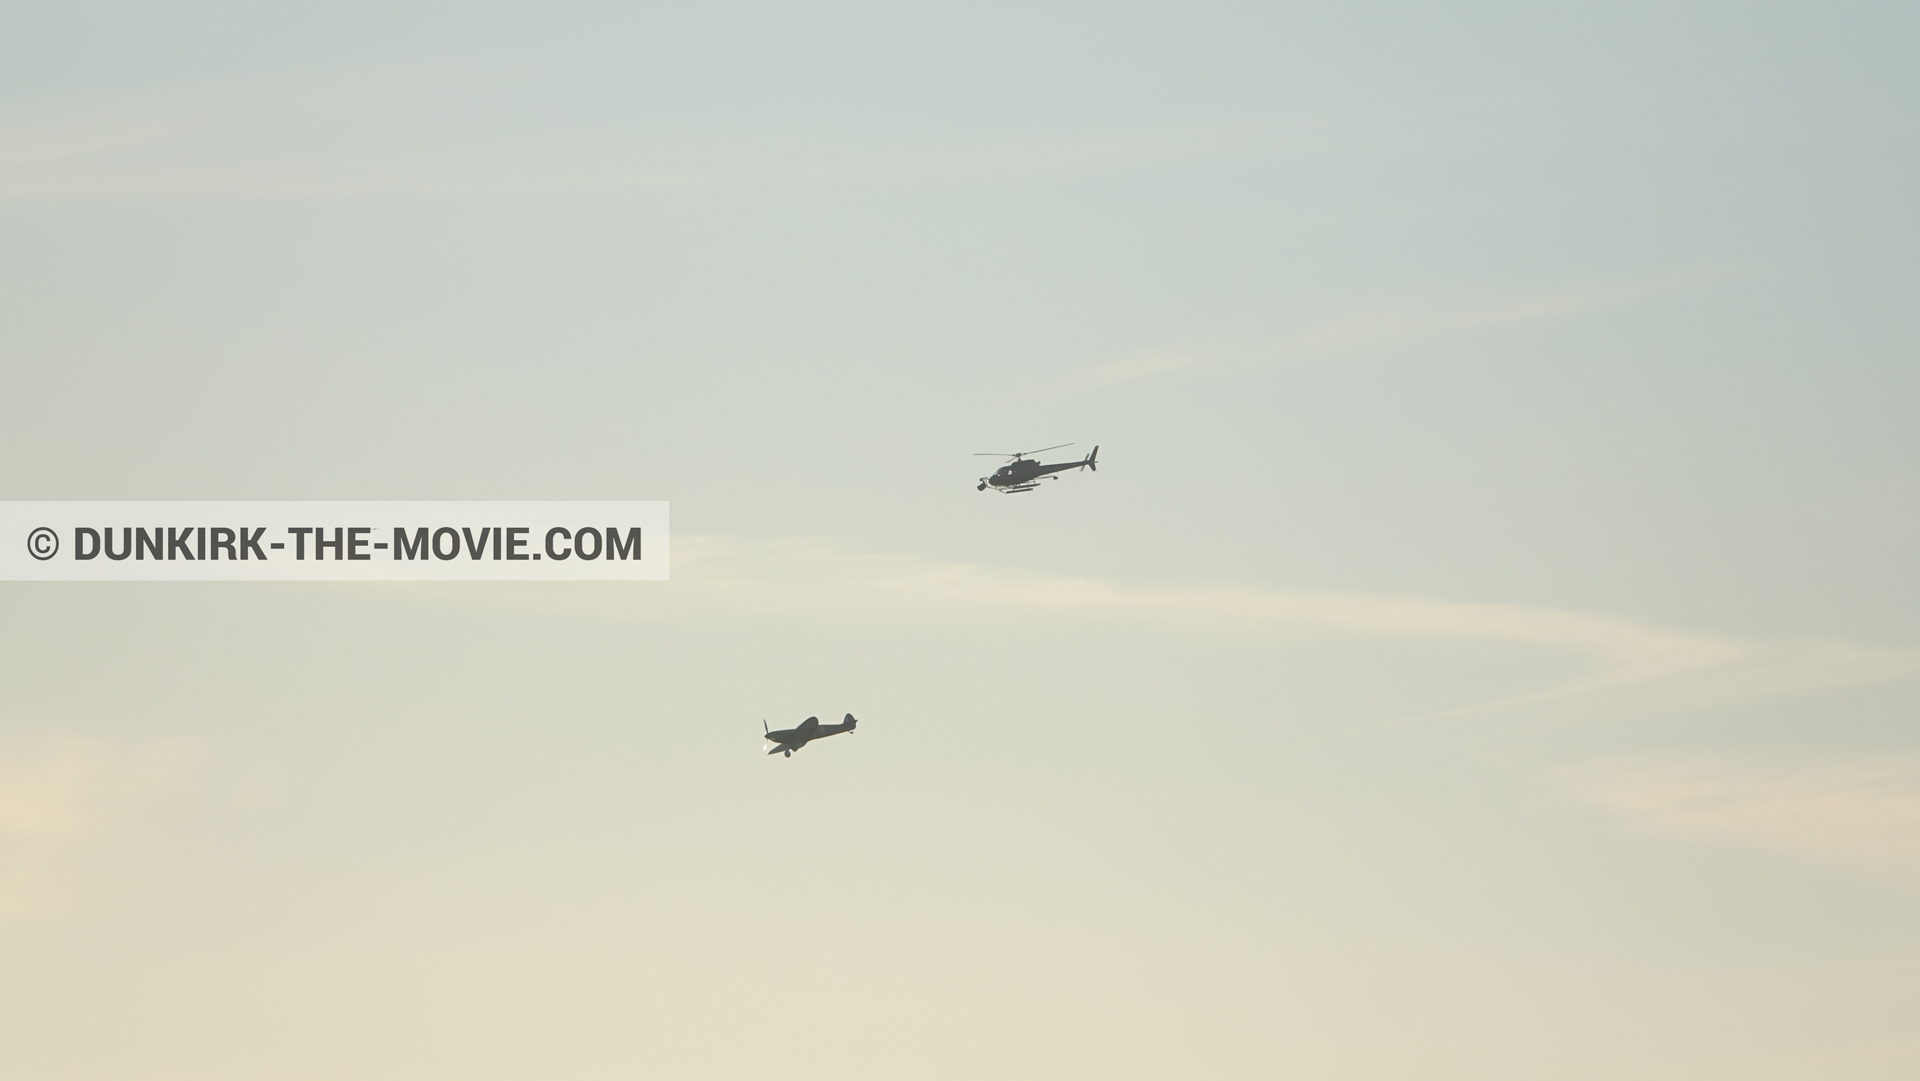 Fotos con avion, cielo anaranjado, cámara helicóptero,  durante el rodaje de la película Dunkerque de Nolan